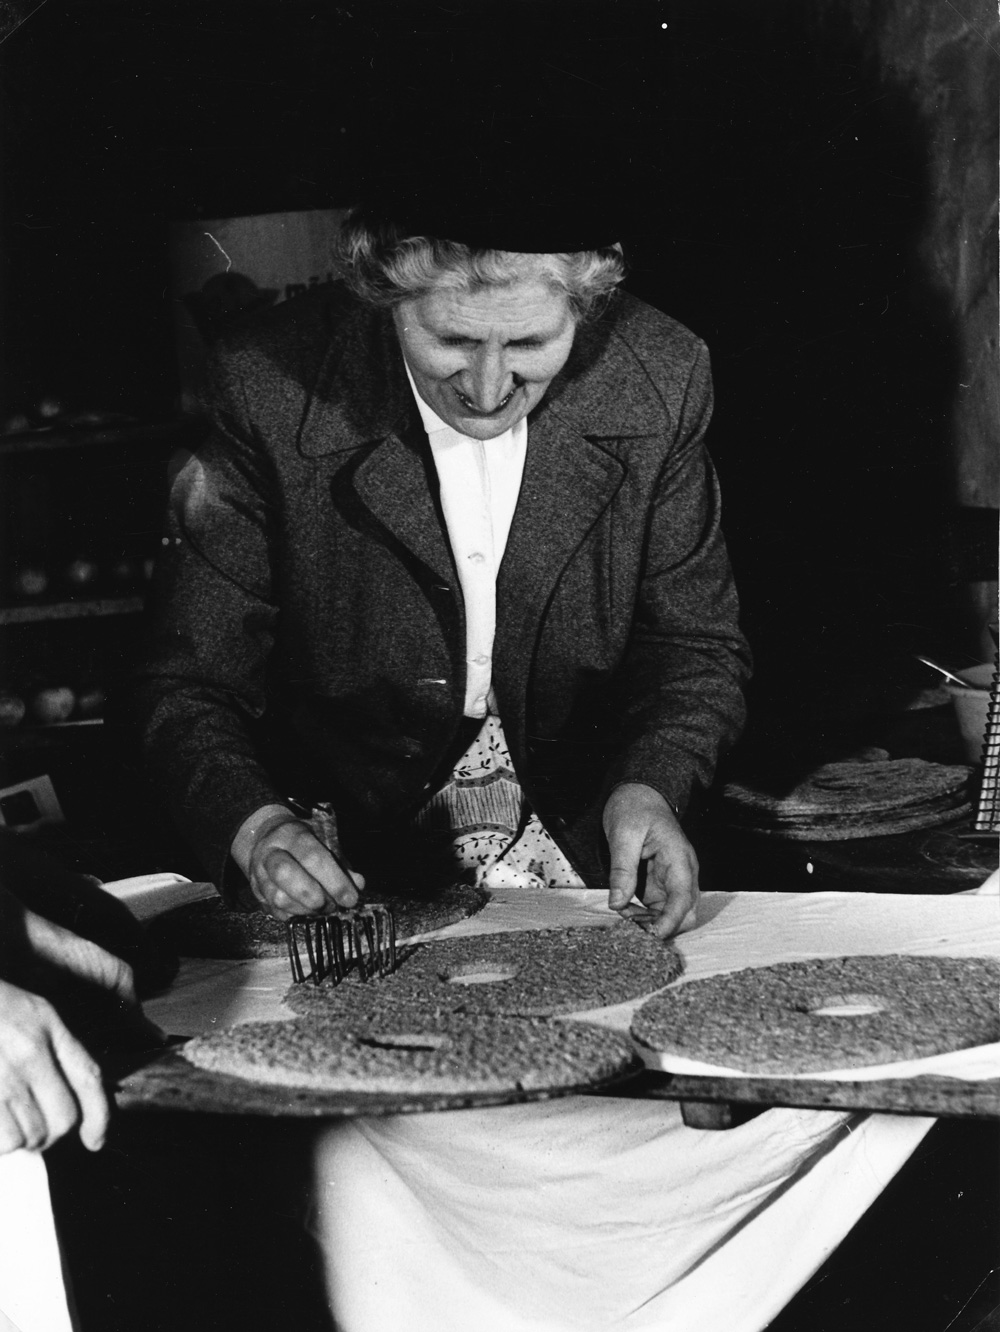 Rågbrödsbakning i Rasbo, Uppland år 1960. Efter jäsningen pickas kakorna. Foto: Wolter Ehn/Institutet för språk och 
folkminnen (CC BY-ND)